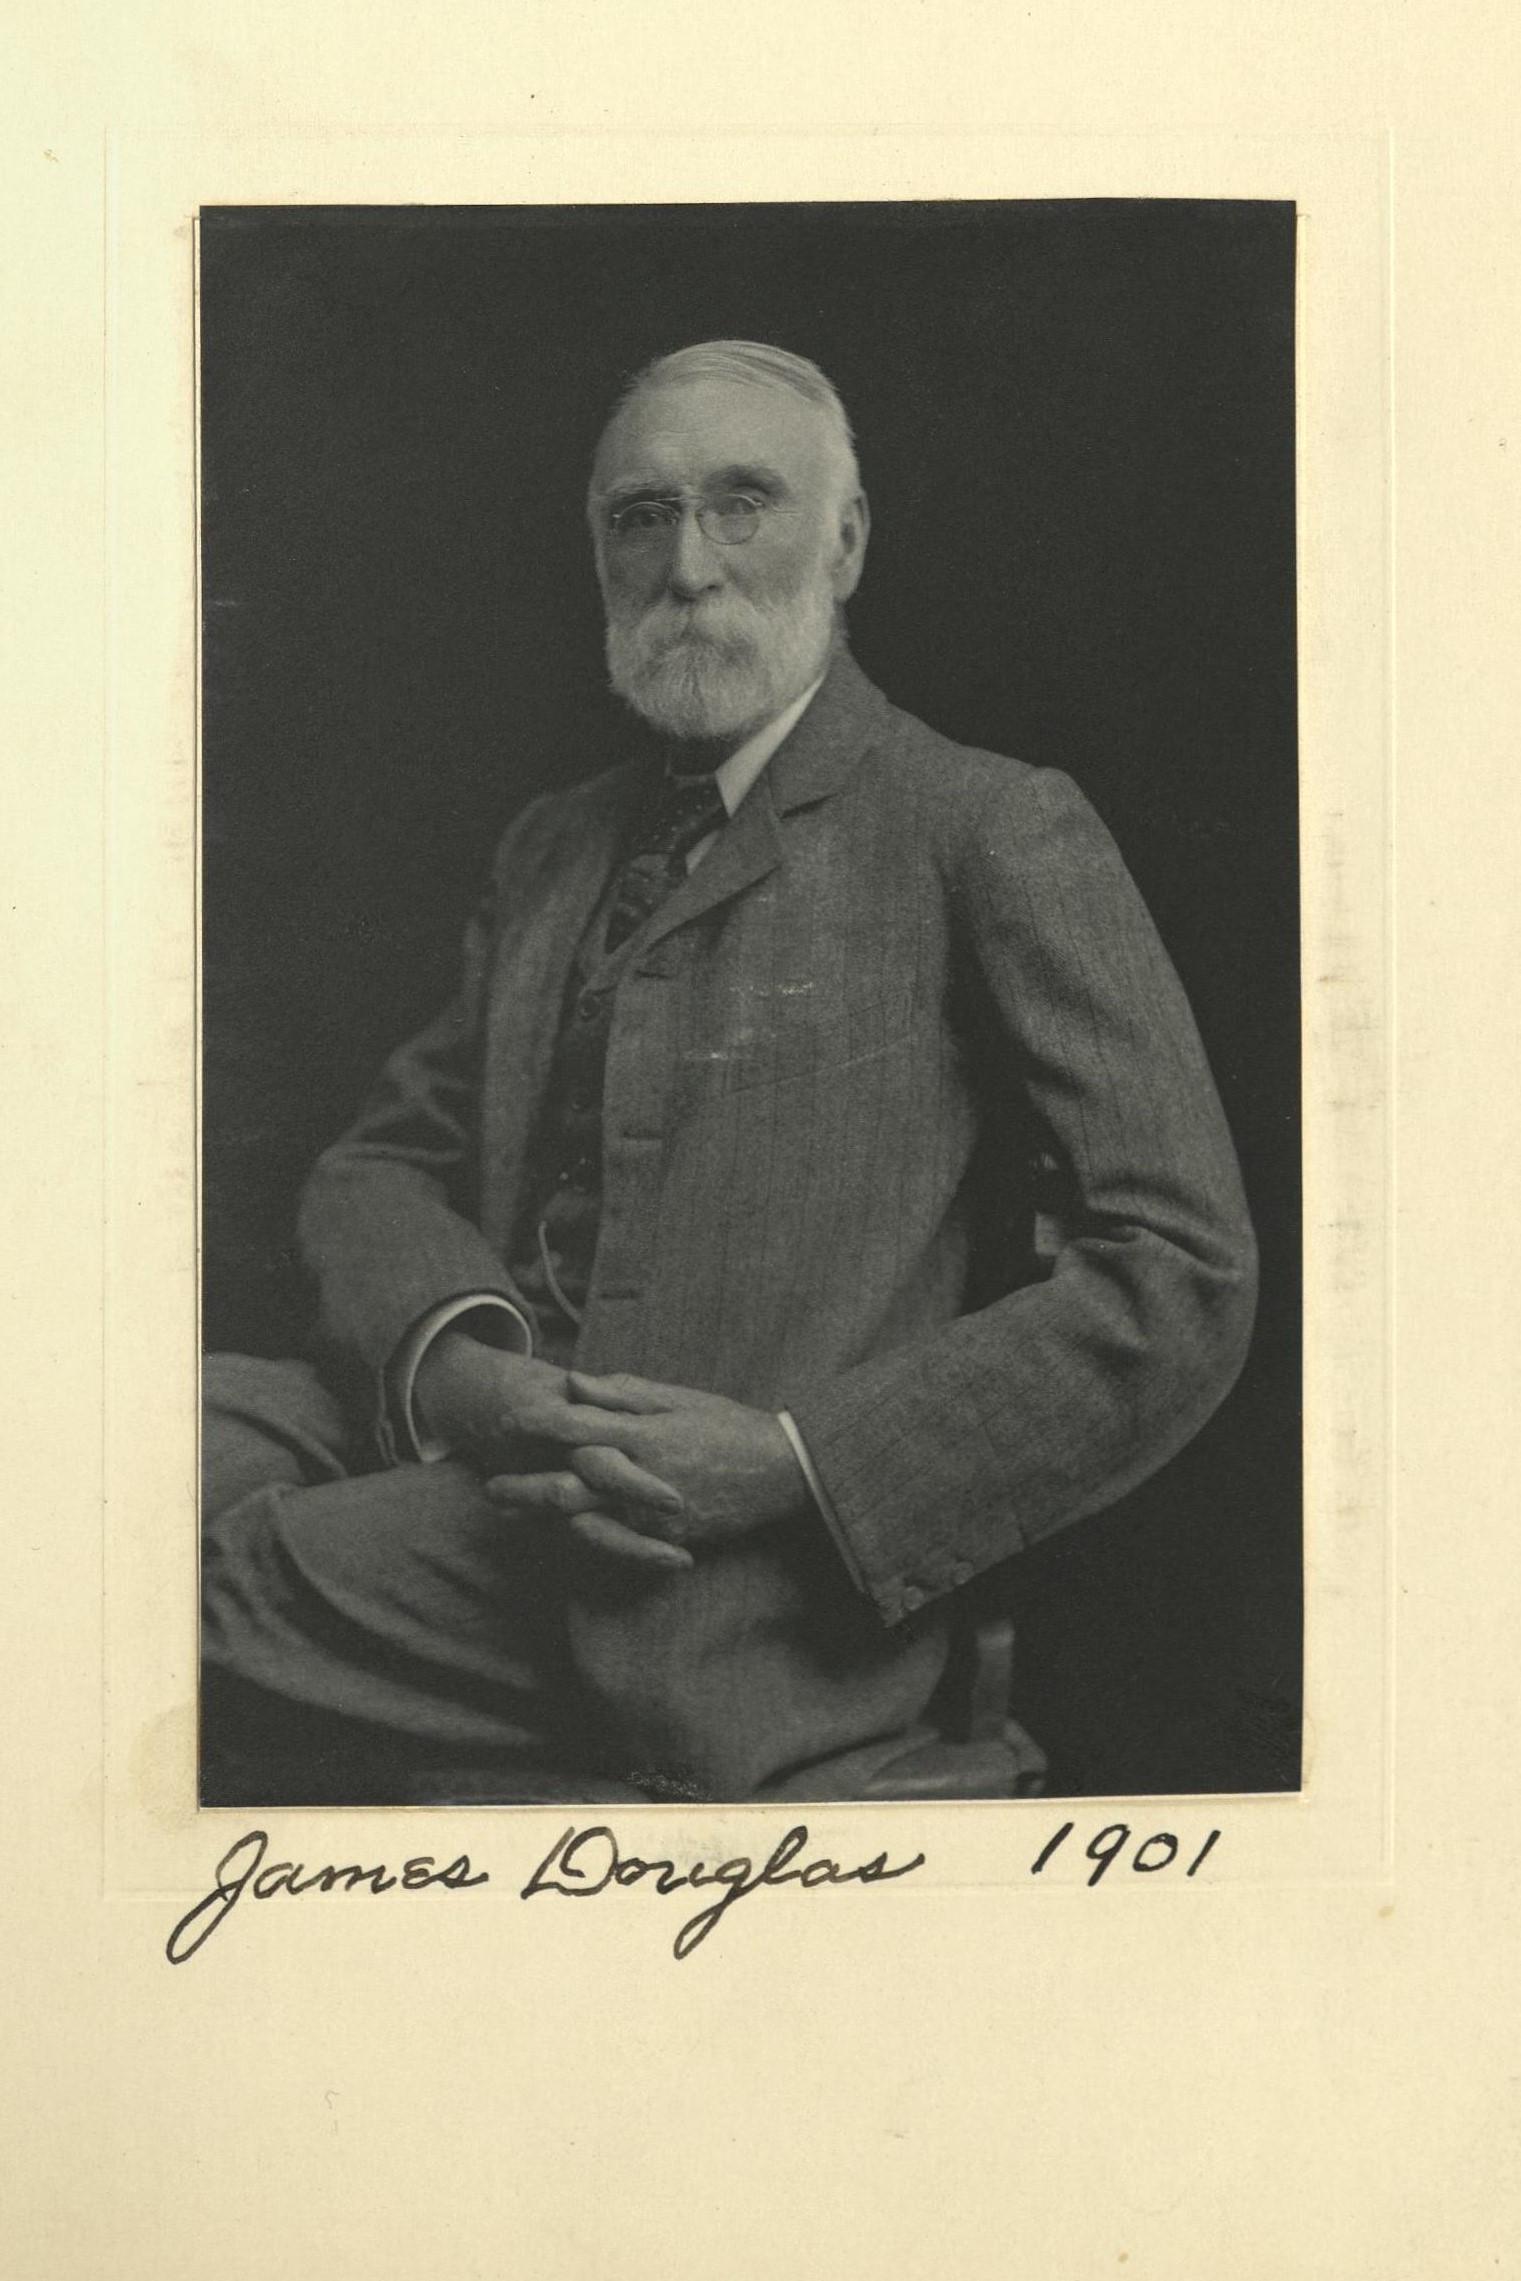 Member portrait of James Douglas